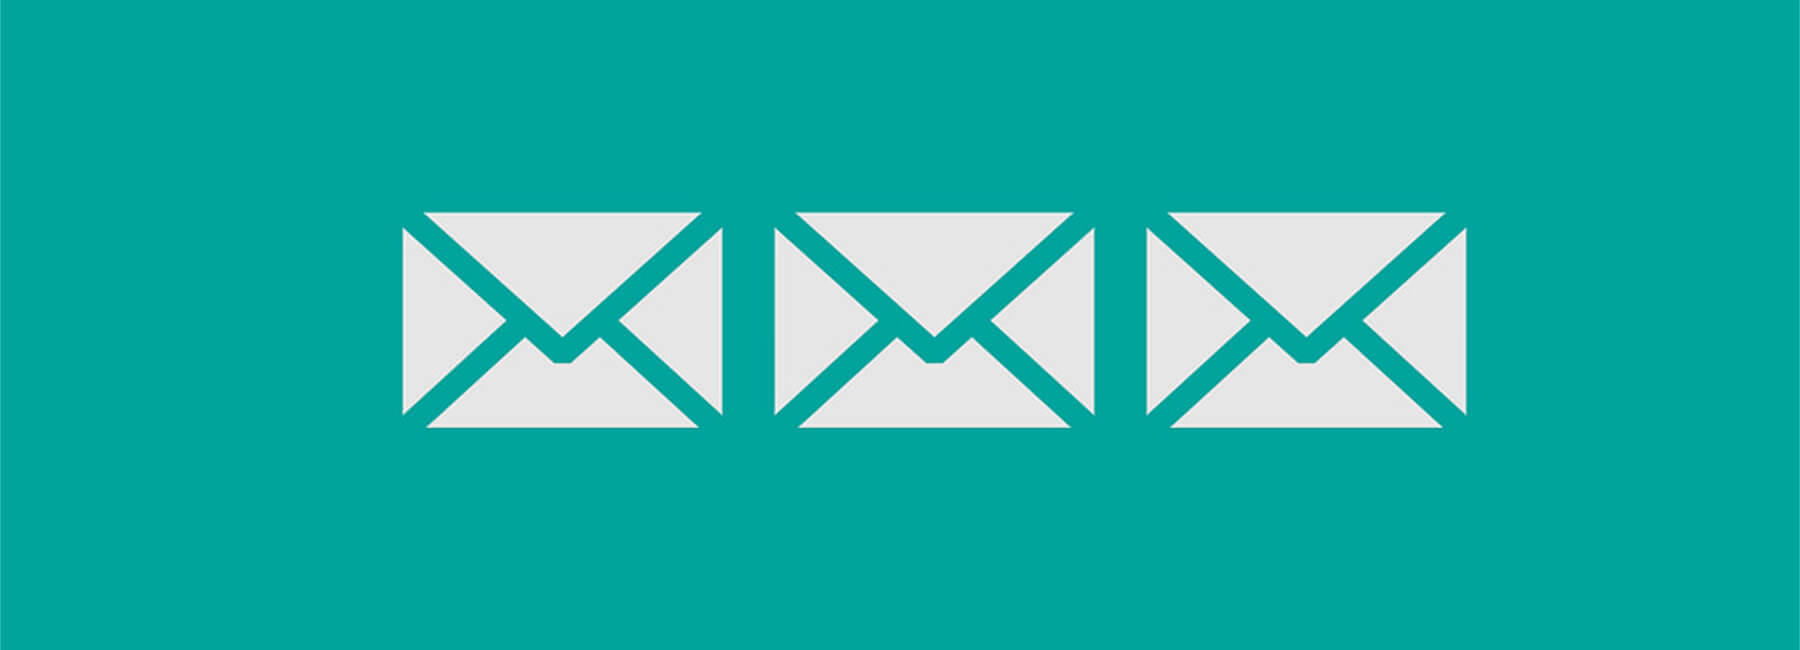 Wie sammelt man Feedback zu E-Mail-Kampagnen?